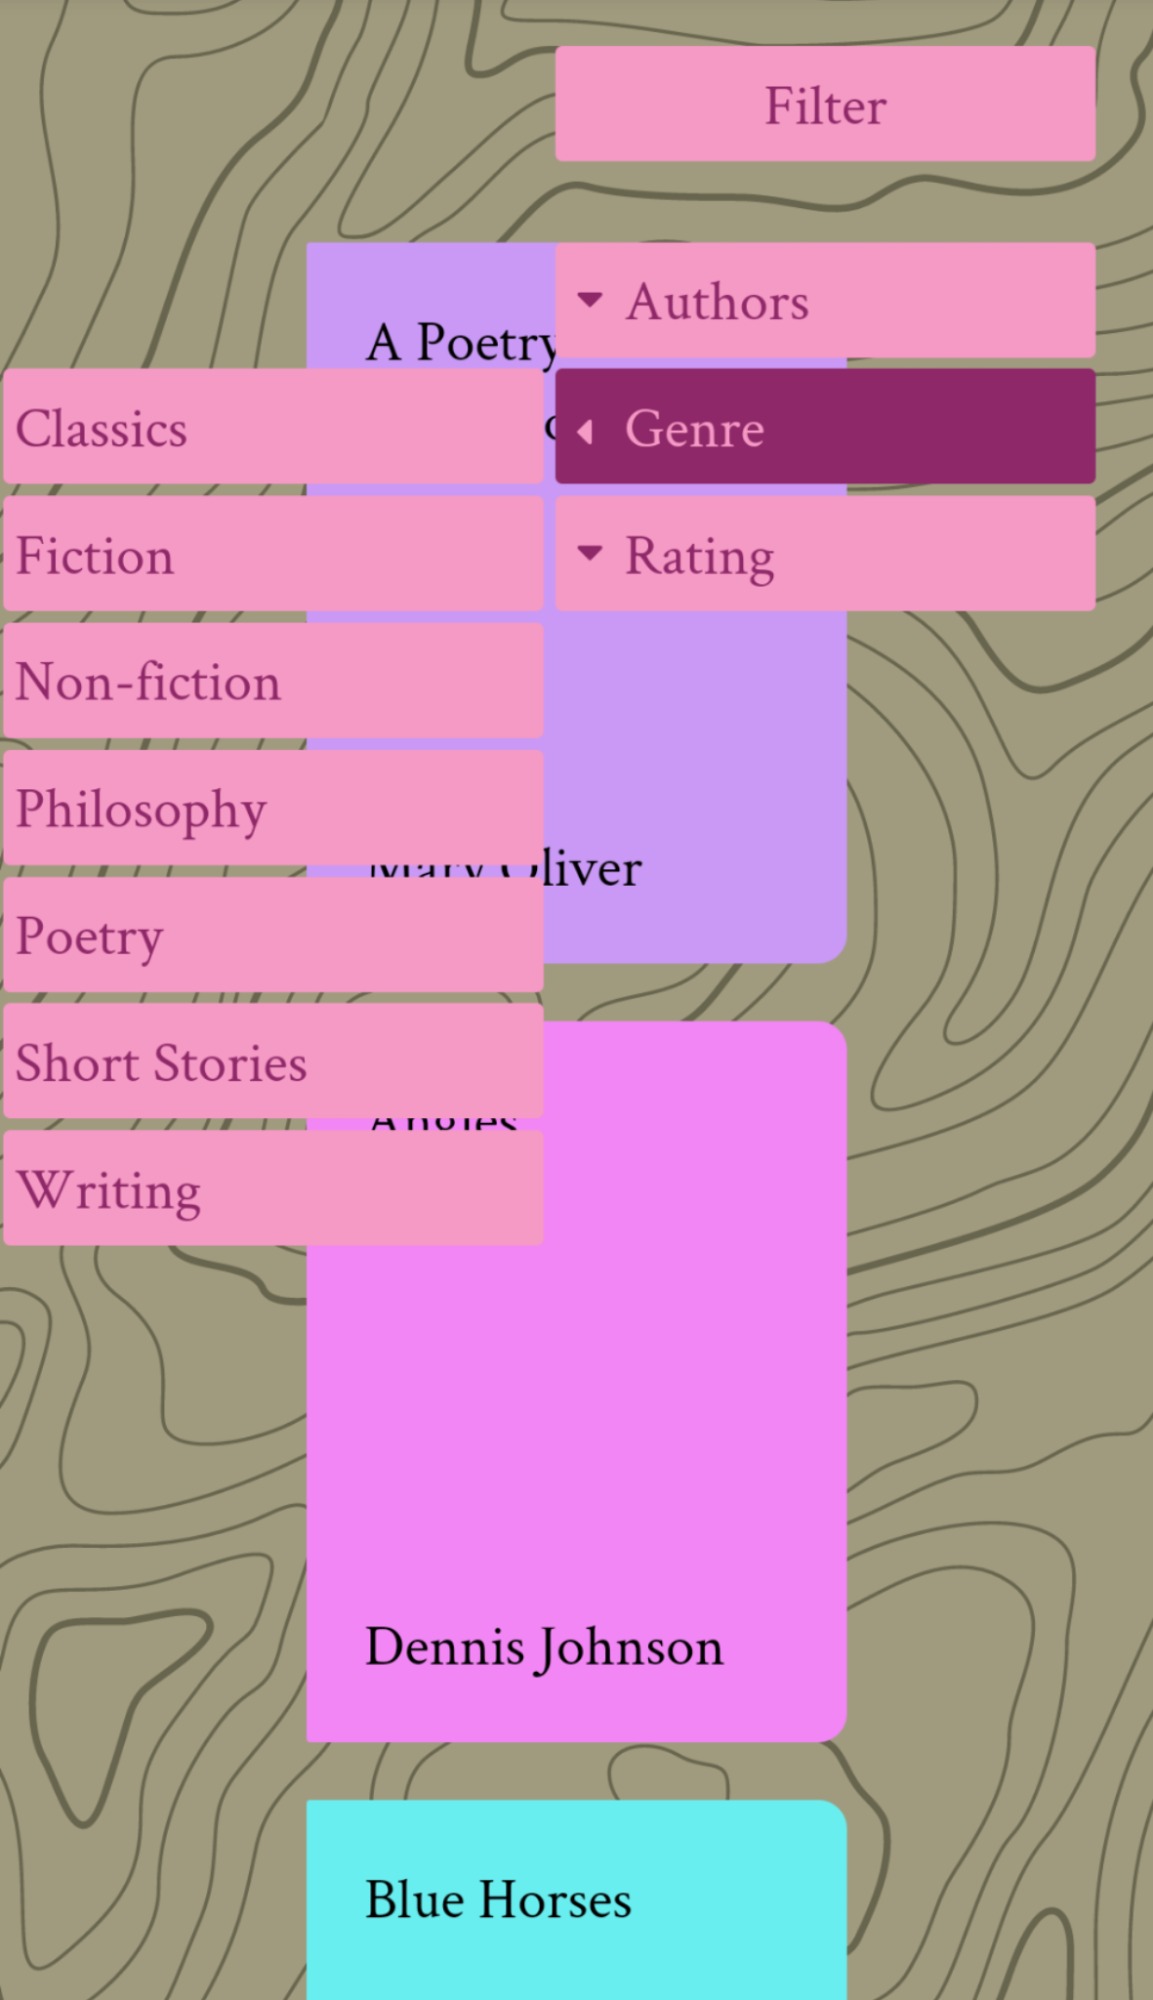 The menu options for sorting in the digital bookshelf